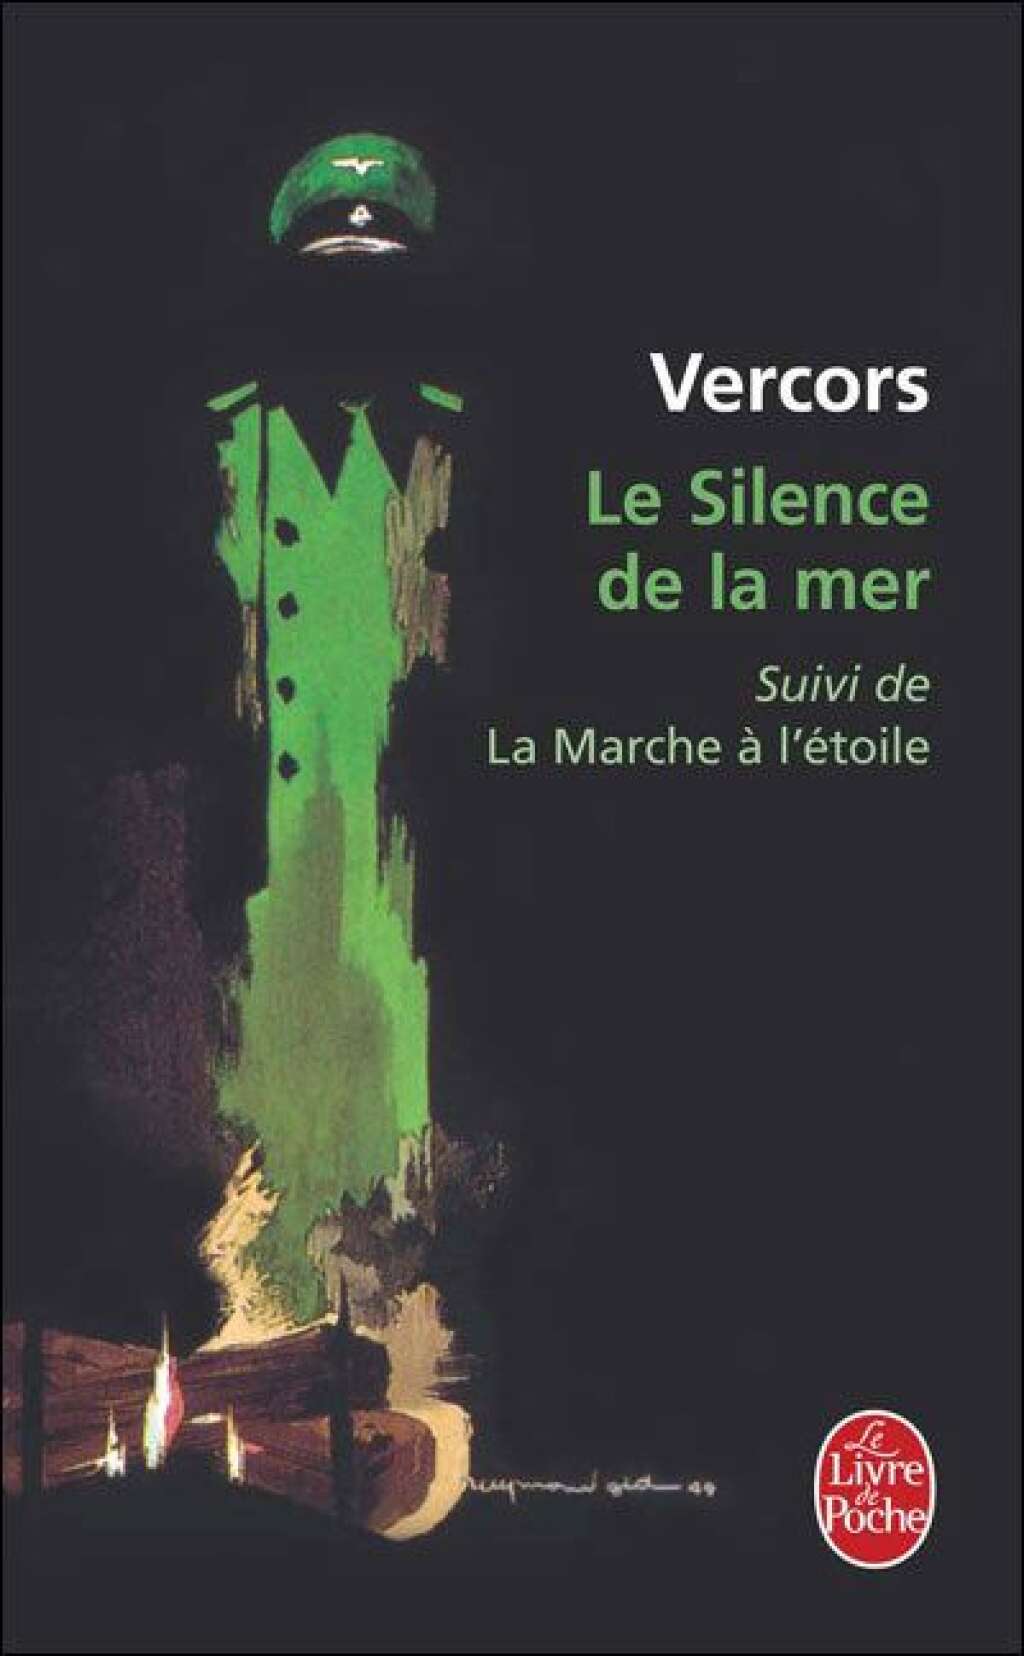 Réponse: "Le Silence de la mer" (1942) de Vercors